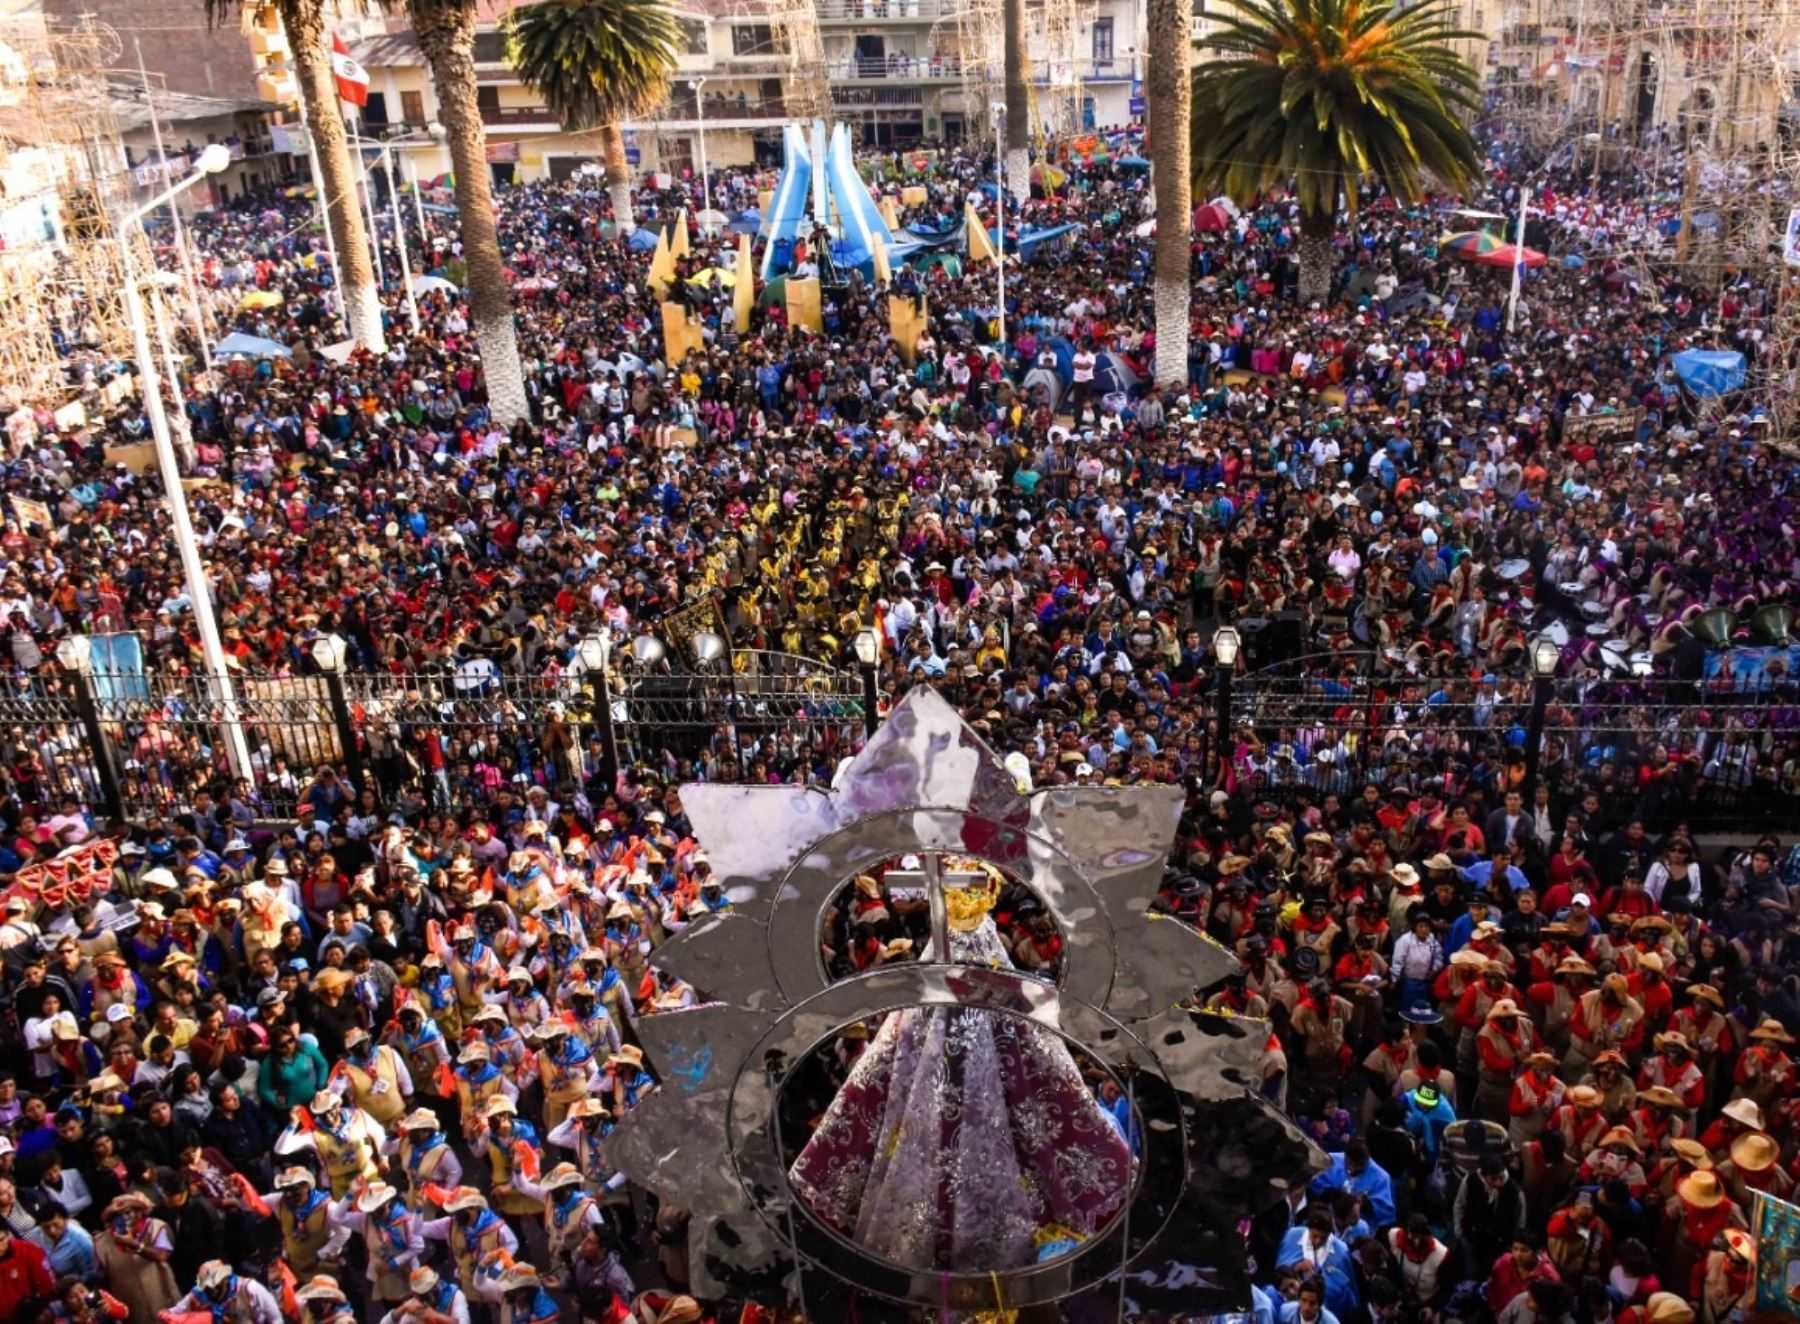 El Arzobispado Metropolitano de Trujillo canceló la peregrinación de la venerada Virgen de la Puerta de Otuzco a Trujillo luego que el Gobierno declarara en emergencia a la región La Libertad. Foto: Luis Puell